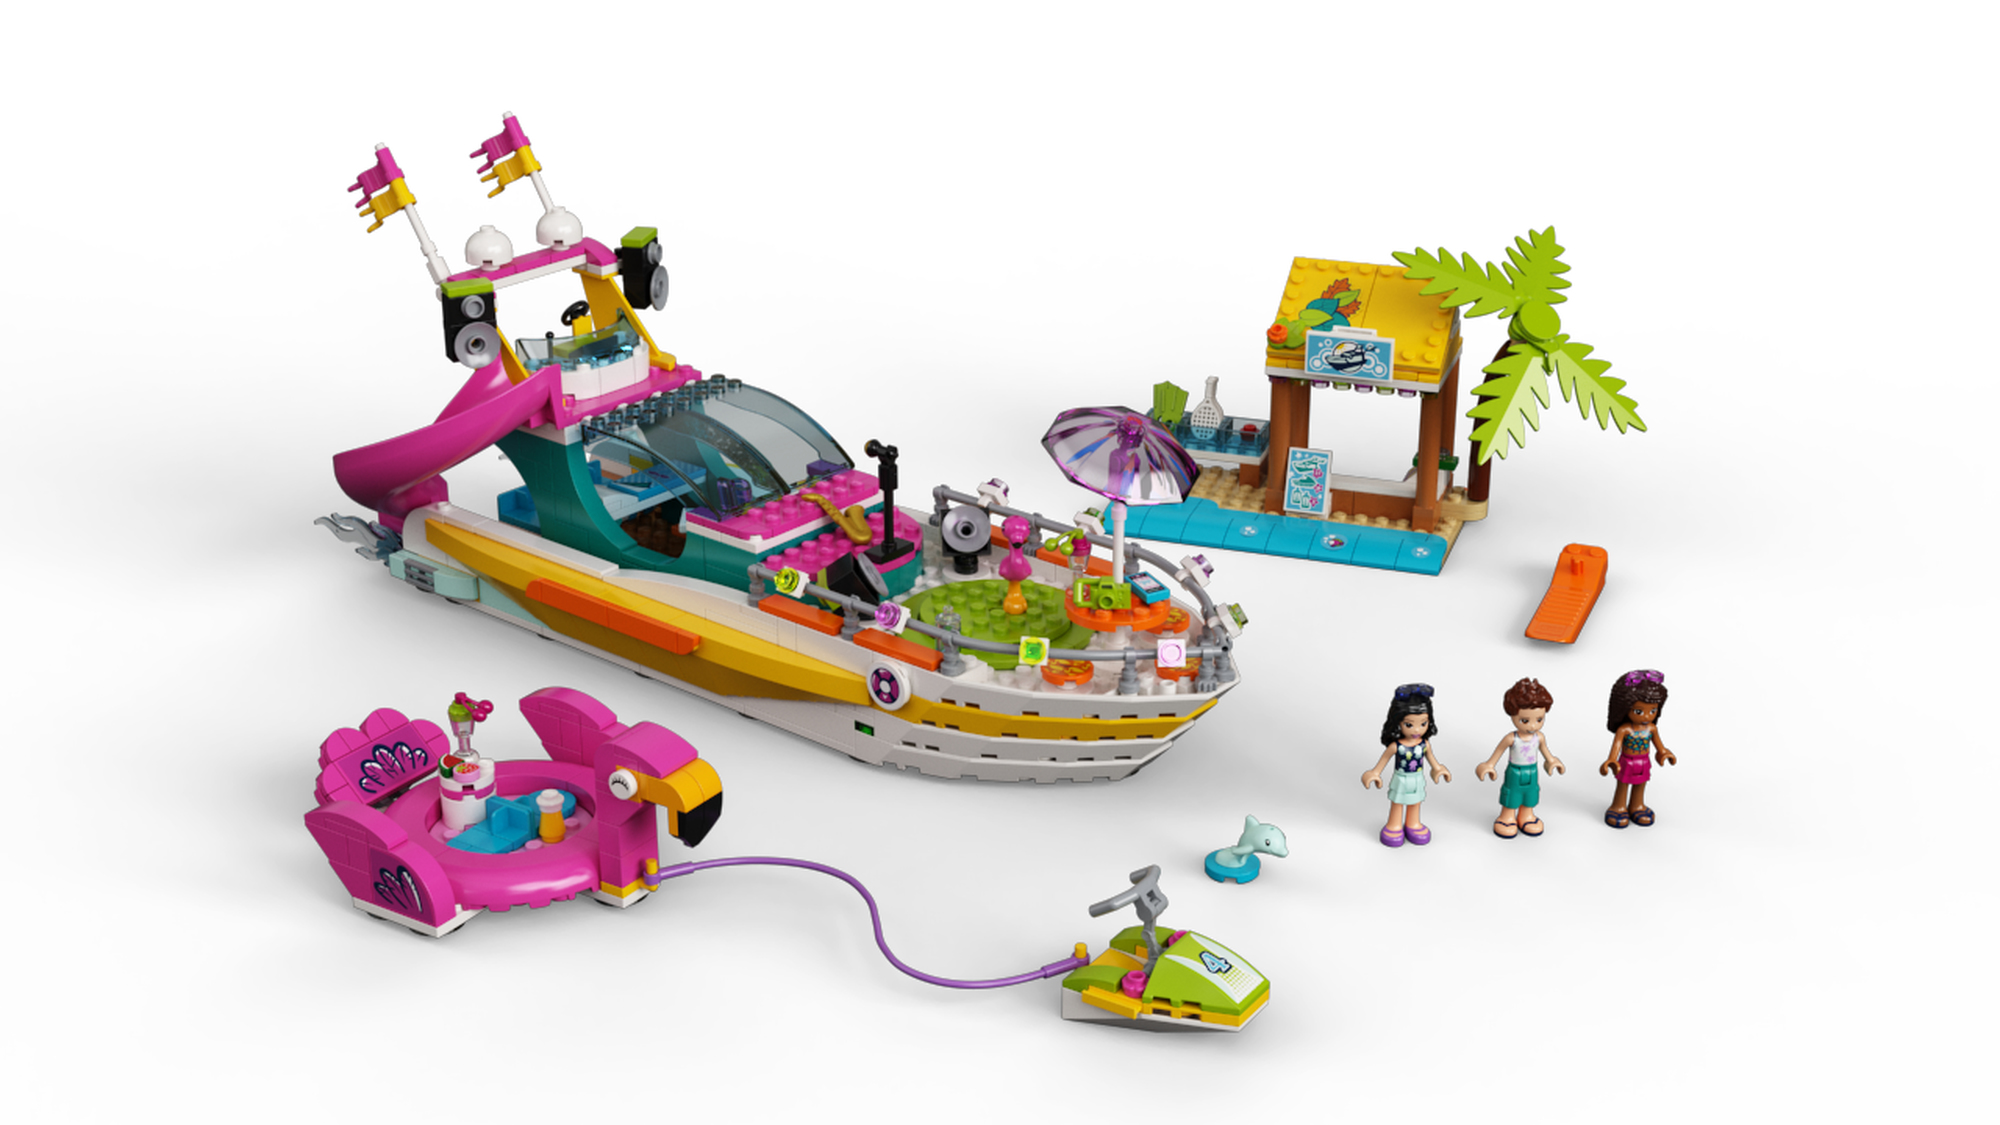 LEGO 41433 specialist | - Boat 5702016686869 DUPLO Party LEGO | en BRICKshop